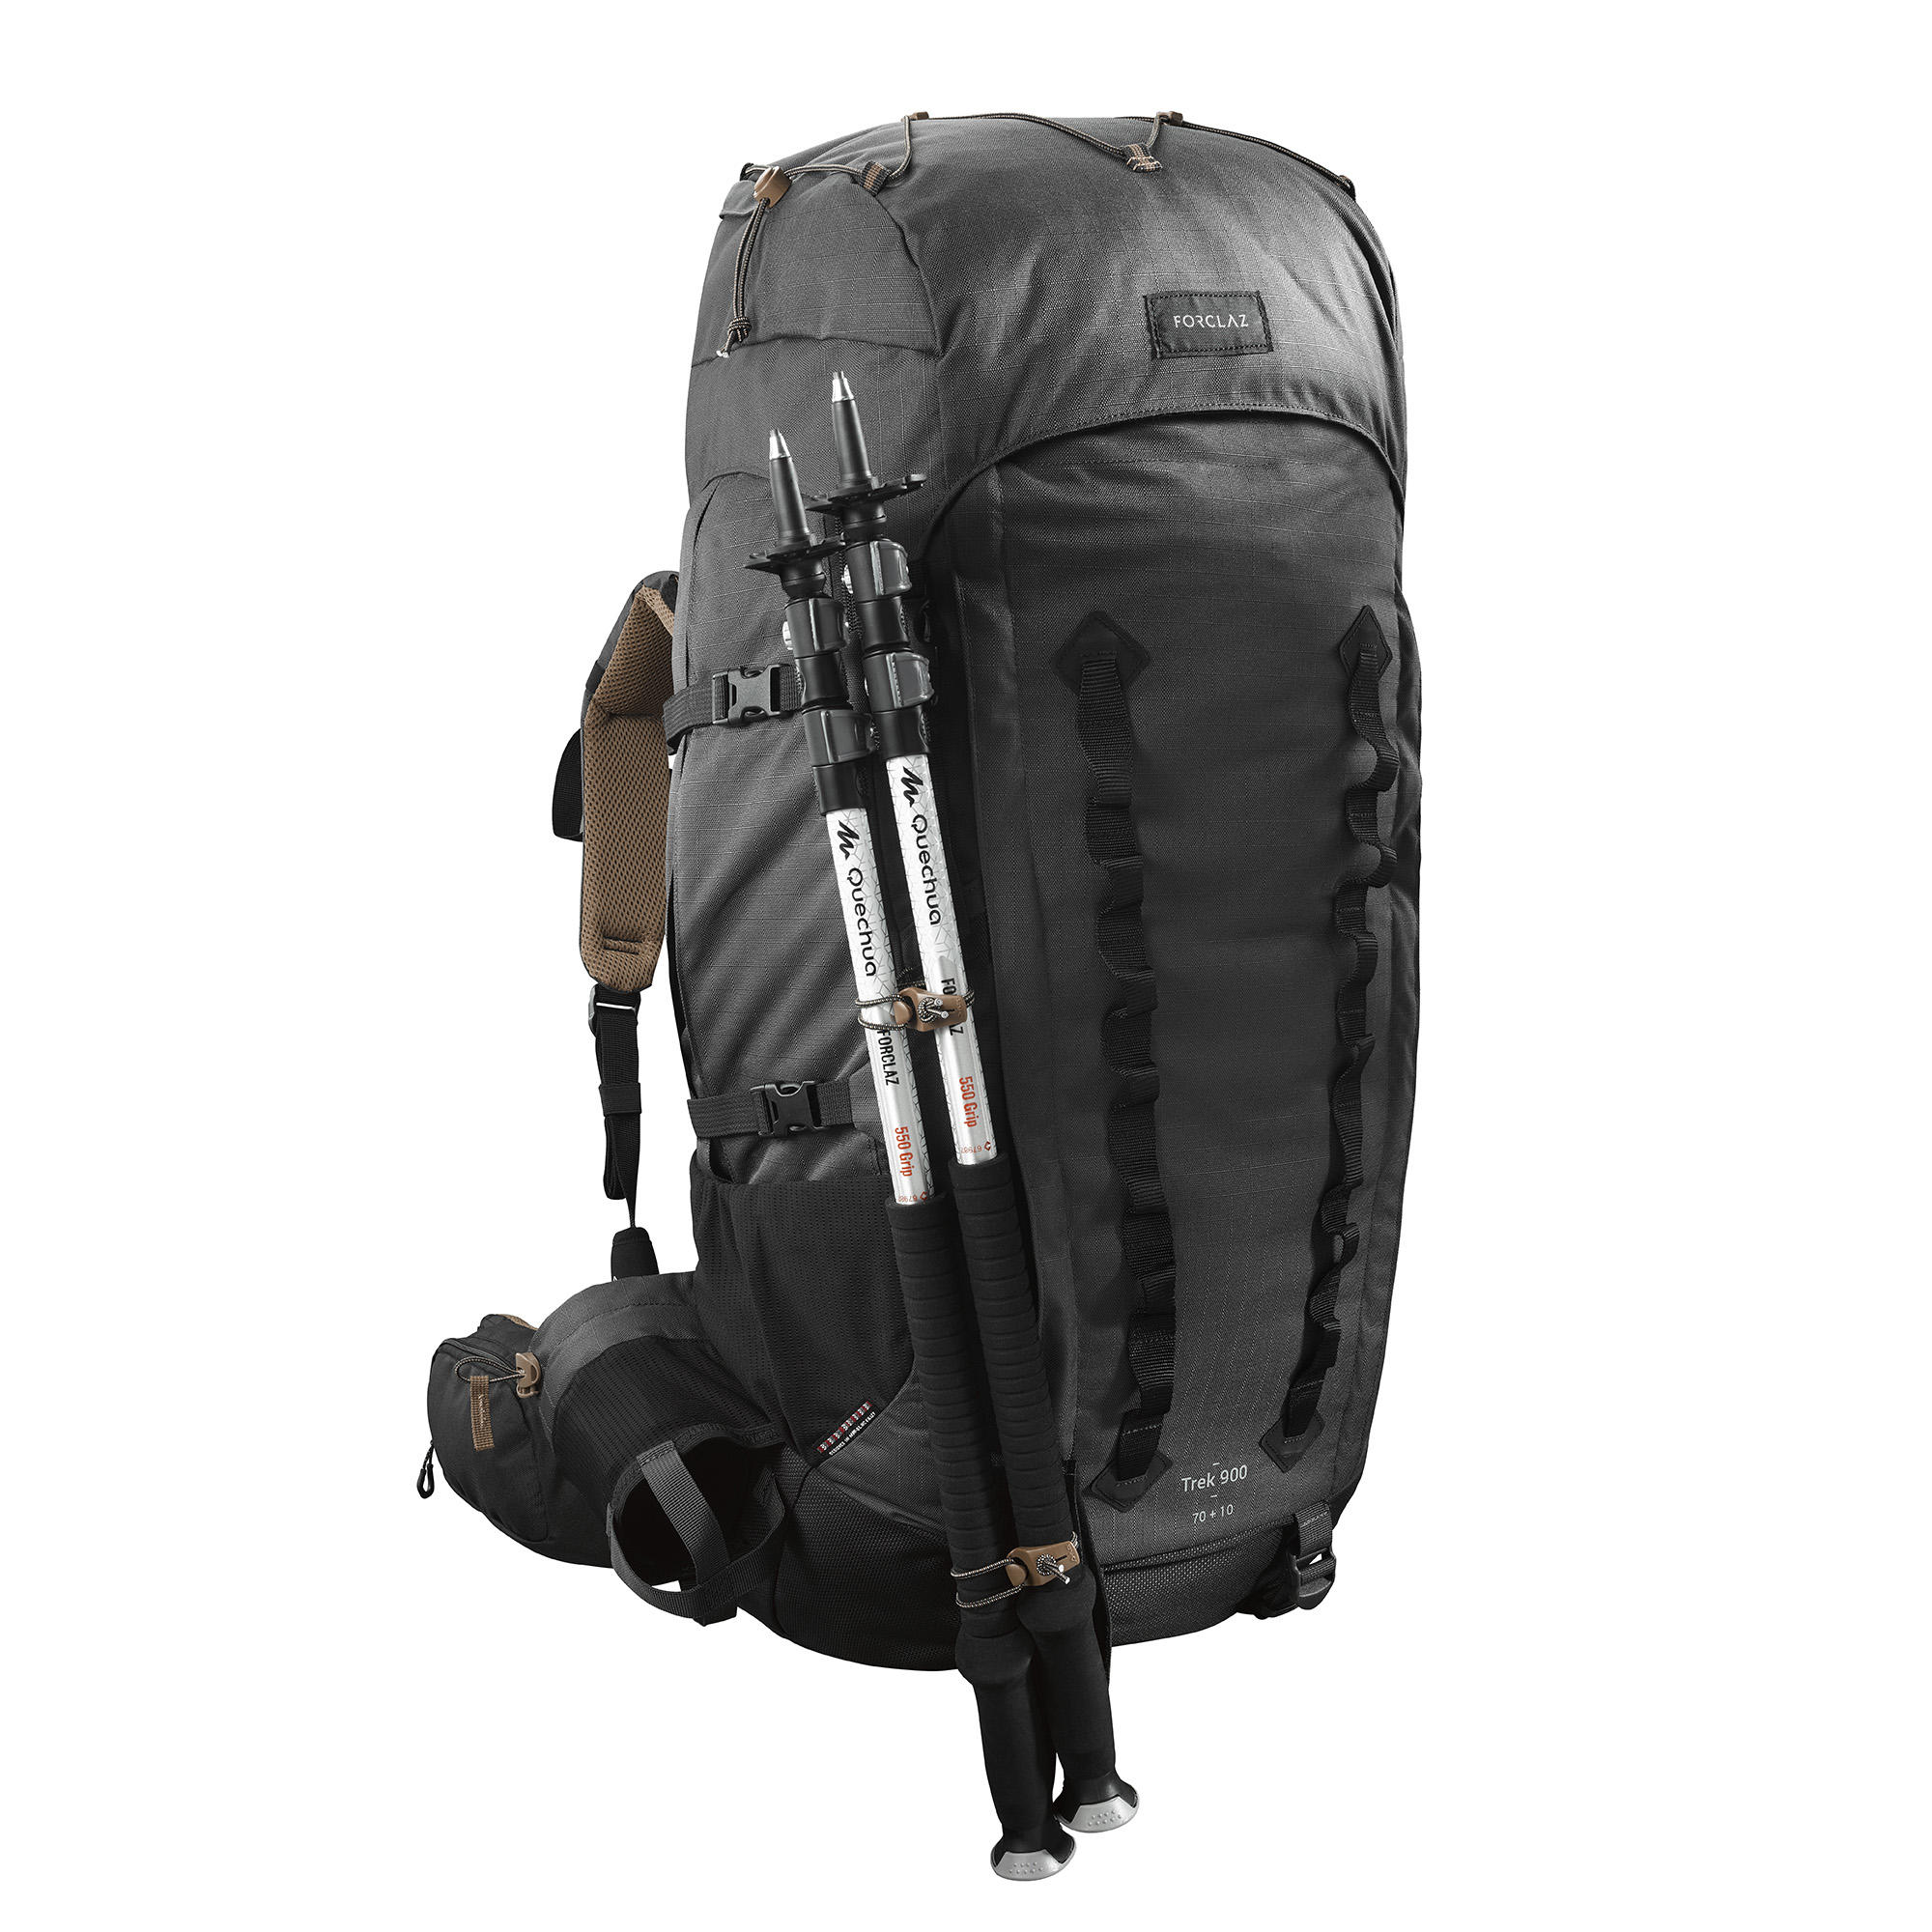 trek 900 backpack